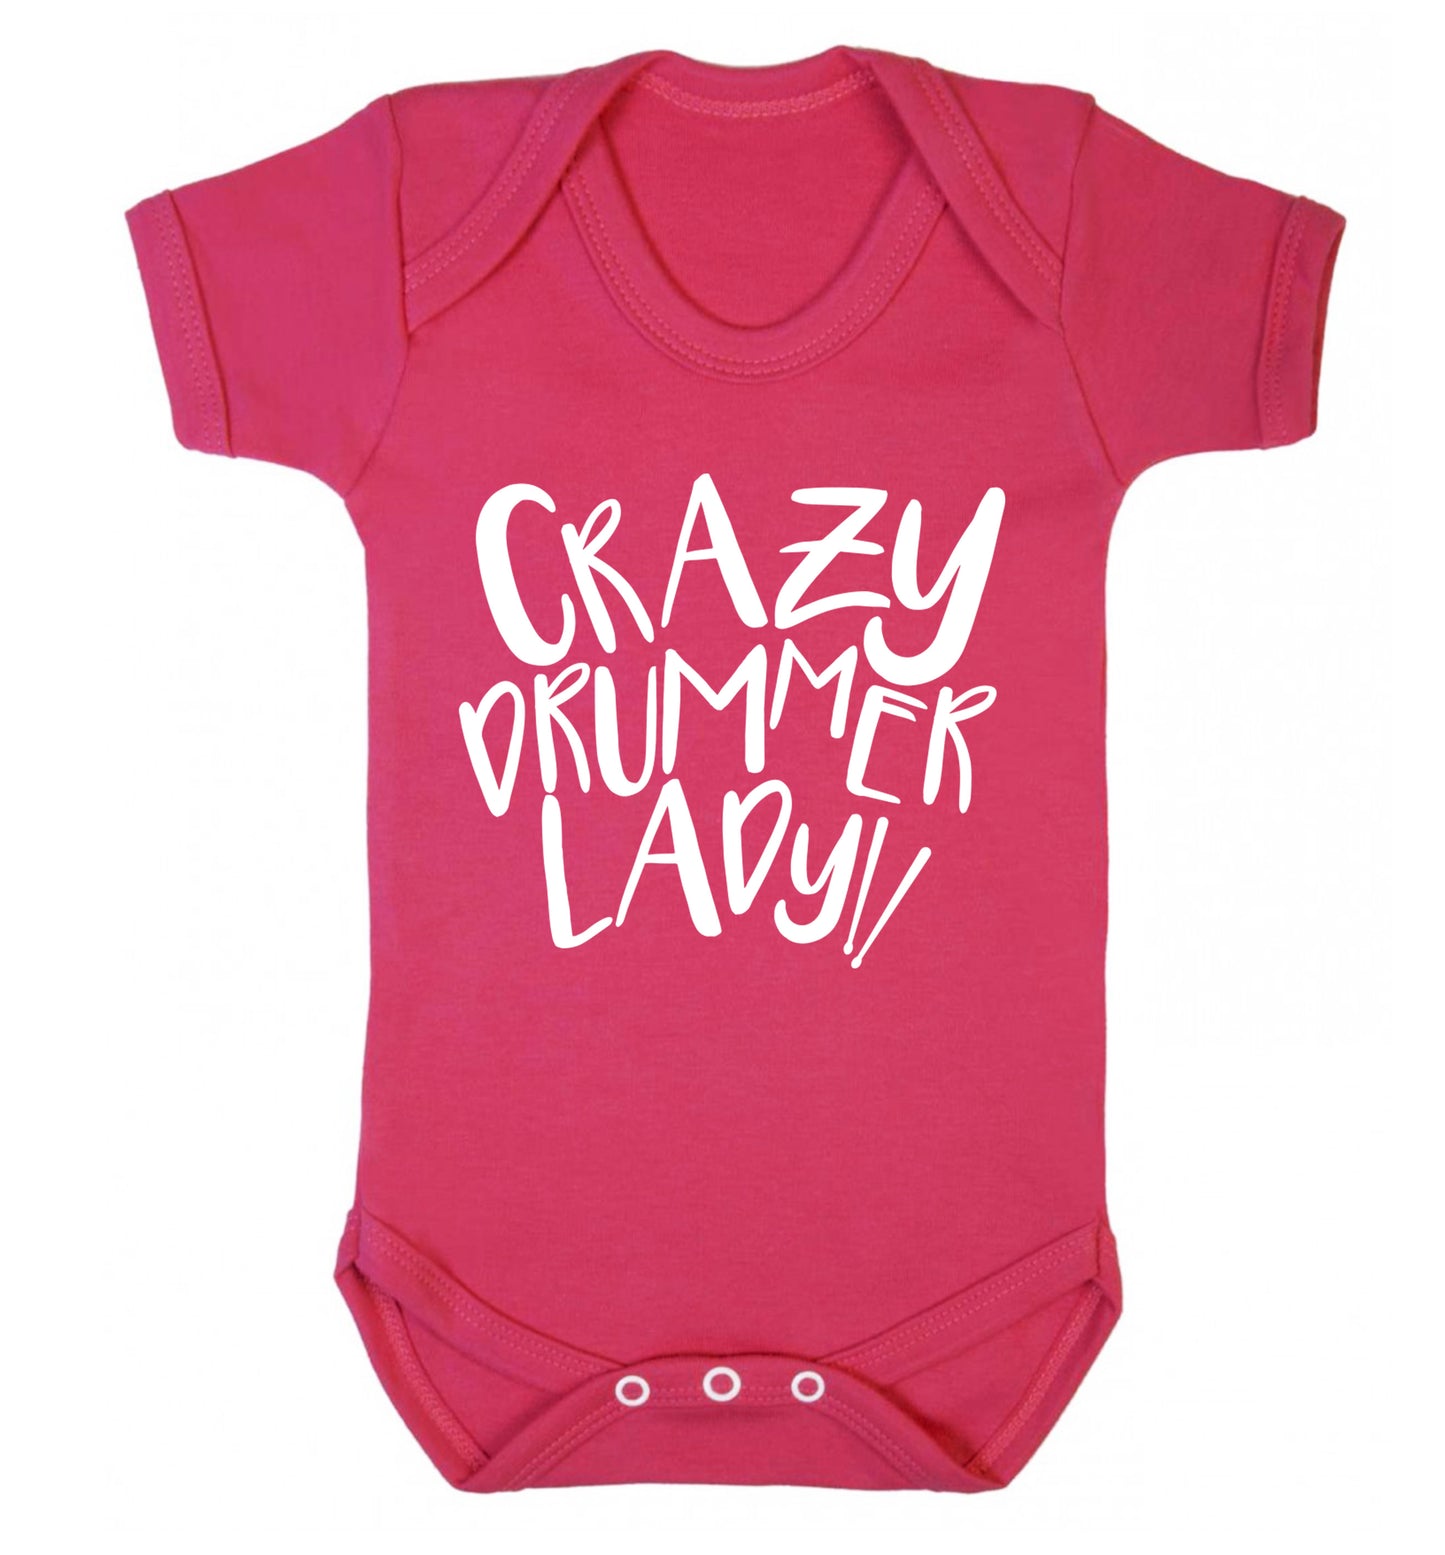 Crazy drummer lady Baby Vest dark pink 18-24 months